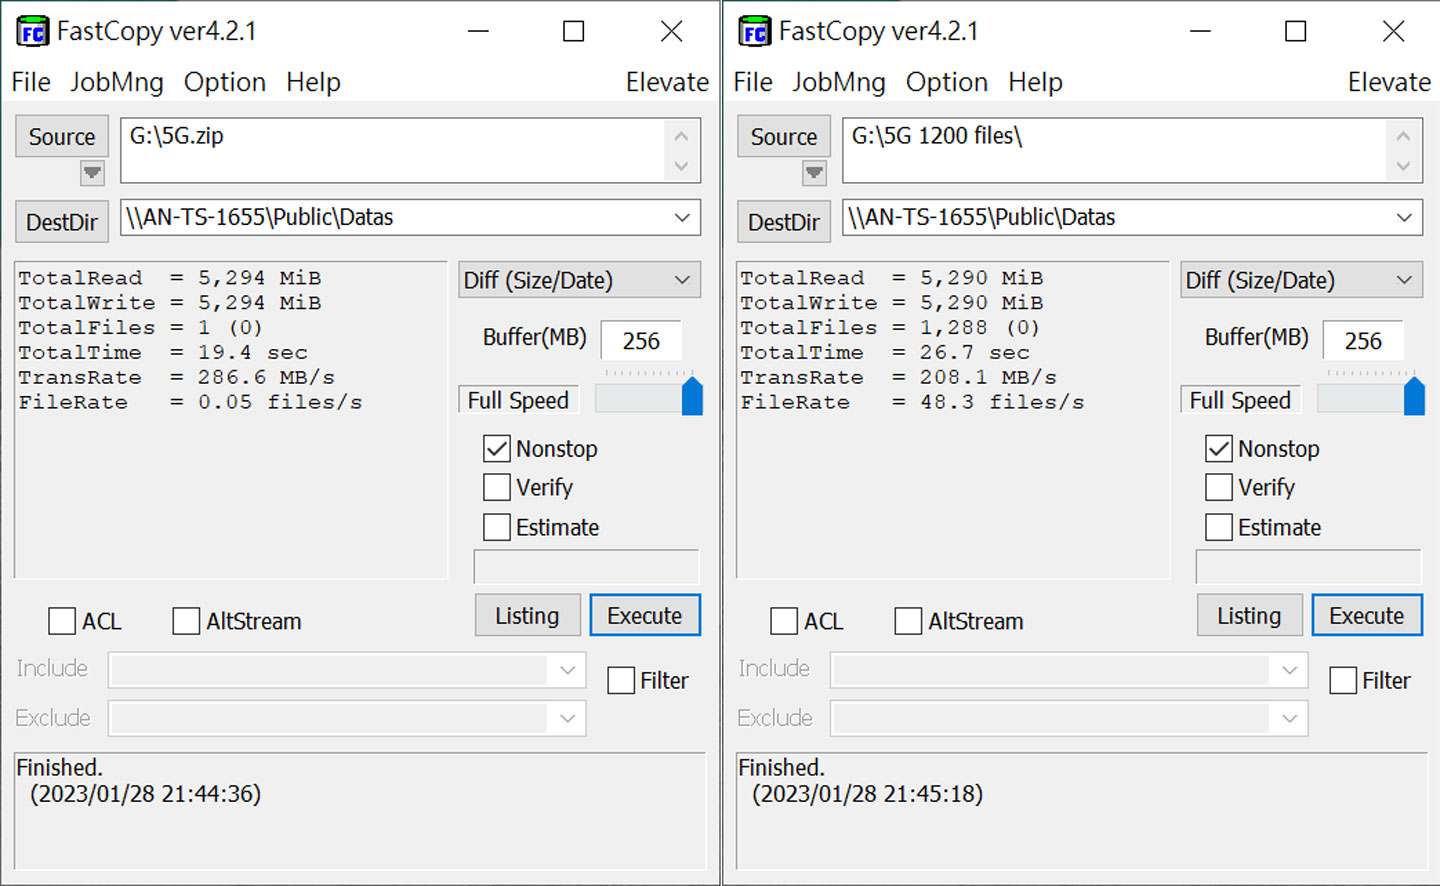 透過 FastCopy 進行檔案傳輸測試，將檔案複製路徑指向安裝 Toshiba MG10 20TB 版的 NQNAP TS-1655 ，並以 5G 大小的單檔（圖左）與多檔（圖右）進行兩次實測，分別獲得平均 286.6 MB/s 與 208.1 MB/s 的傳輸速度成績。 ▲ 透過 NAS performance Tester 進行檔案傳輸實測，將測試路徑指向安裝 Toshiba MG10 20TB 版的 NQNAP TS-1655，圖上將檔案尺寸定為 400，圖下將檔案尺寸定為 1000，分別獲得平均 290.00 MB/s 與 288.71 MB/s 的傳輸速度成績。 ▲ 實際透過 SMB 的方式從電腦端傳輸 5G 單檔至 安裝 Toshiba MG10 20TB 版的 NQNAP TS-1655 的共用資料夾，傳輸前後速度落在 272 MB/s - 275 MB/s 之間。